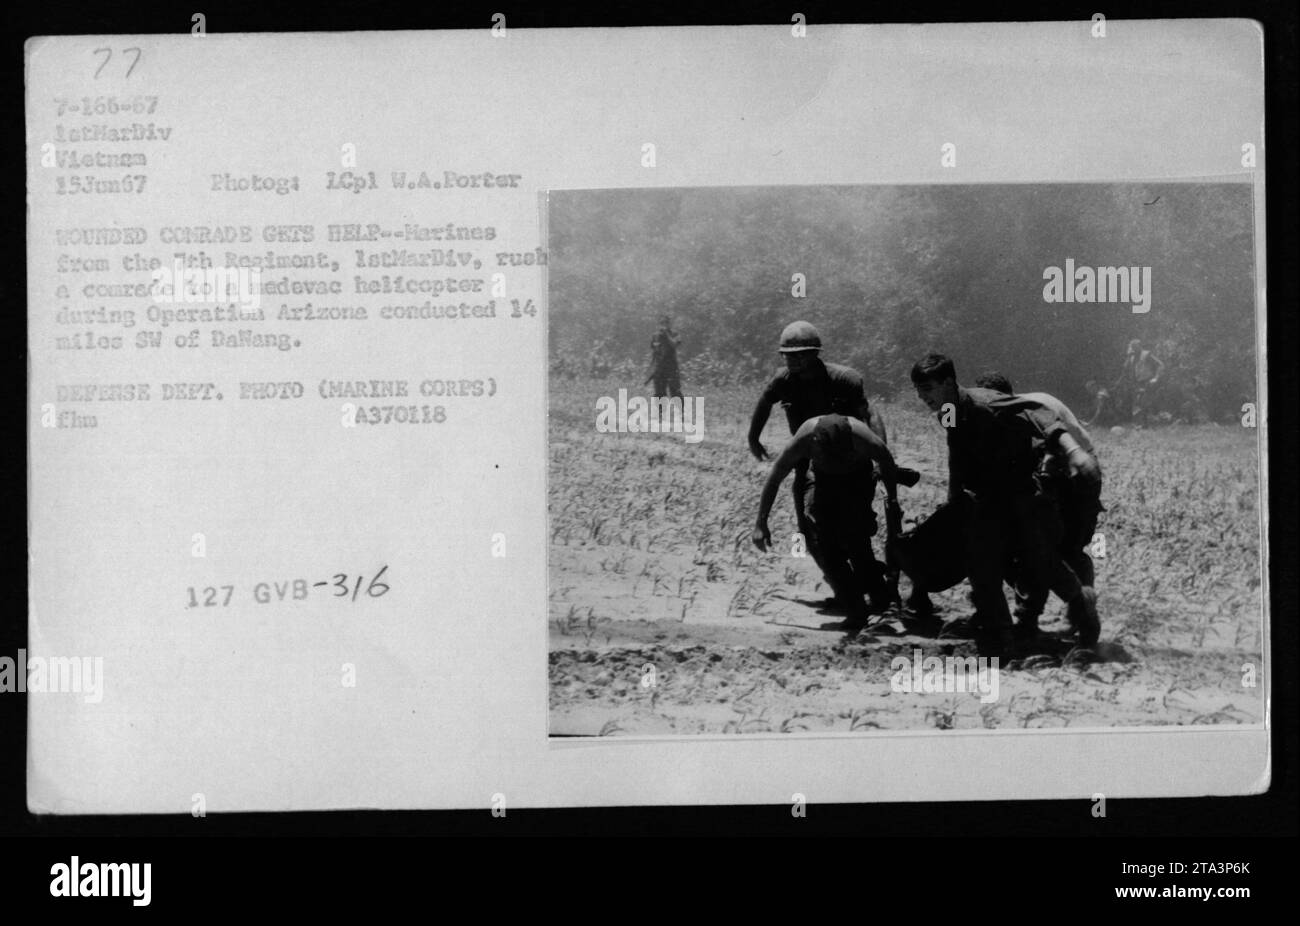 Marines vom 7. Regiment, 1. Marine-Division, helfen, einen verwundeten Kameraden während der Operation Arizona zu einem medizinischen Evakuierungshubschrauber zu transportieren. Die Operation fand etwa 22 Meilen südwestlich von Dalang am 15. Juni 1967 statt. Dieses Foto wurde von LCpl W.A. Porter aufgenommen und ist ein Foto des Verteidigungsministeriums. Stockfoto